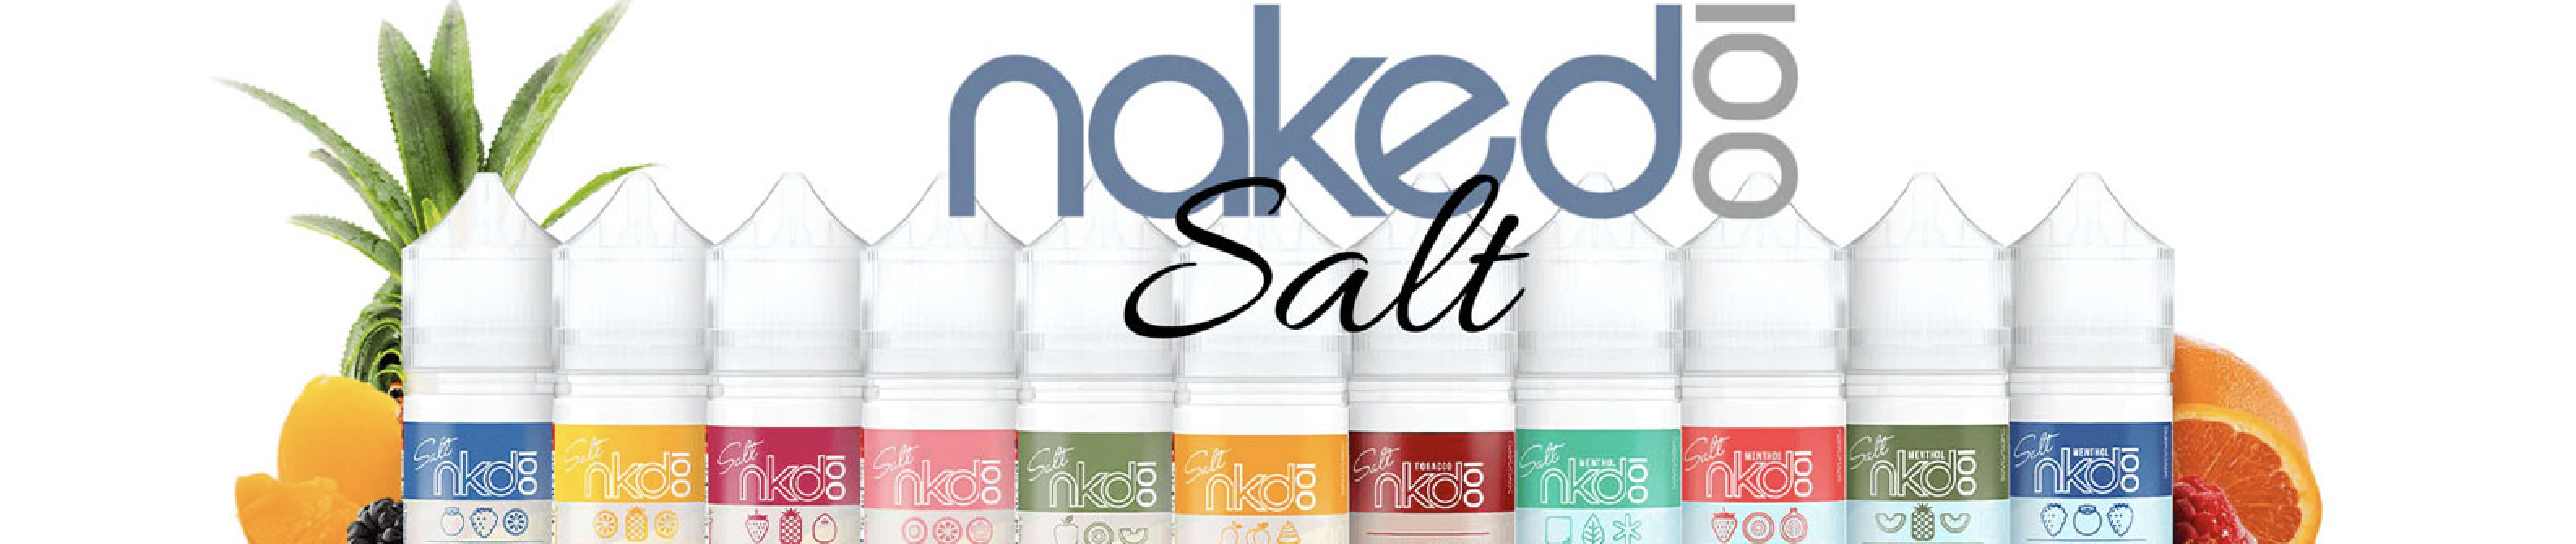 NKD / Naked 100 Salt E-LIQUID